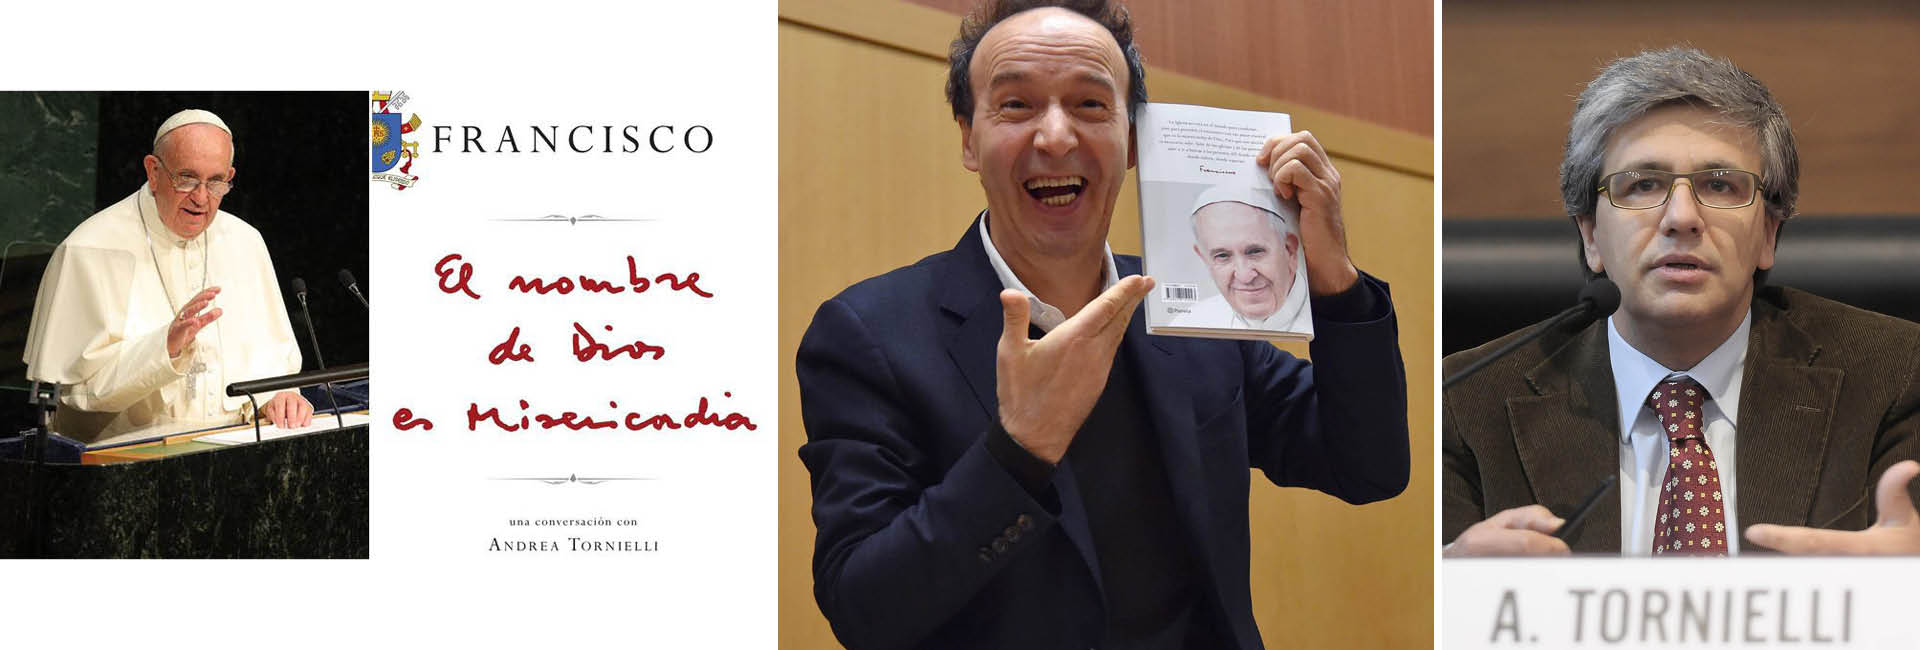 Se lanza el libro del Papa: El nombre de Dios es misericordia